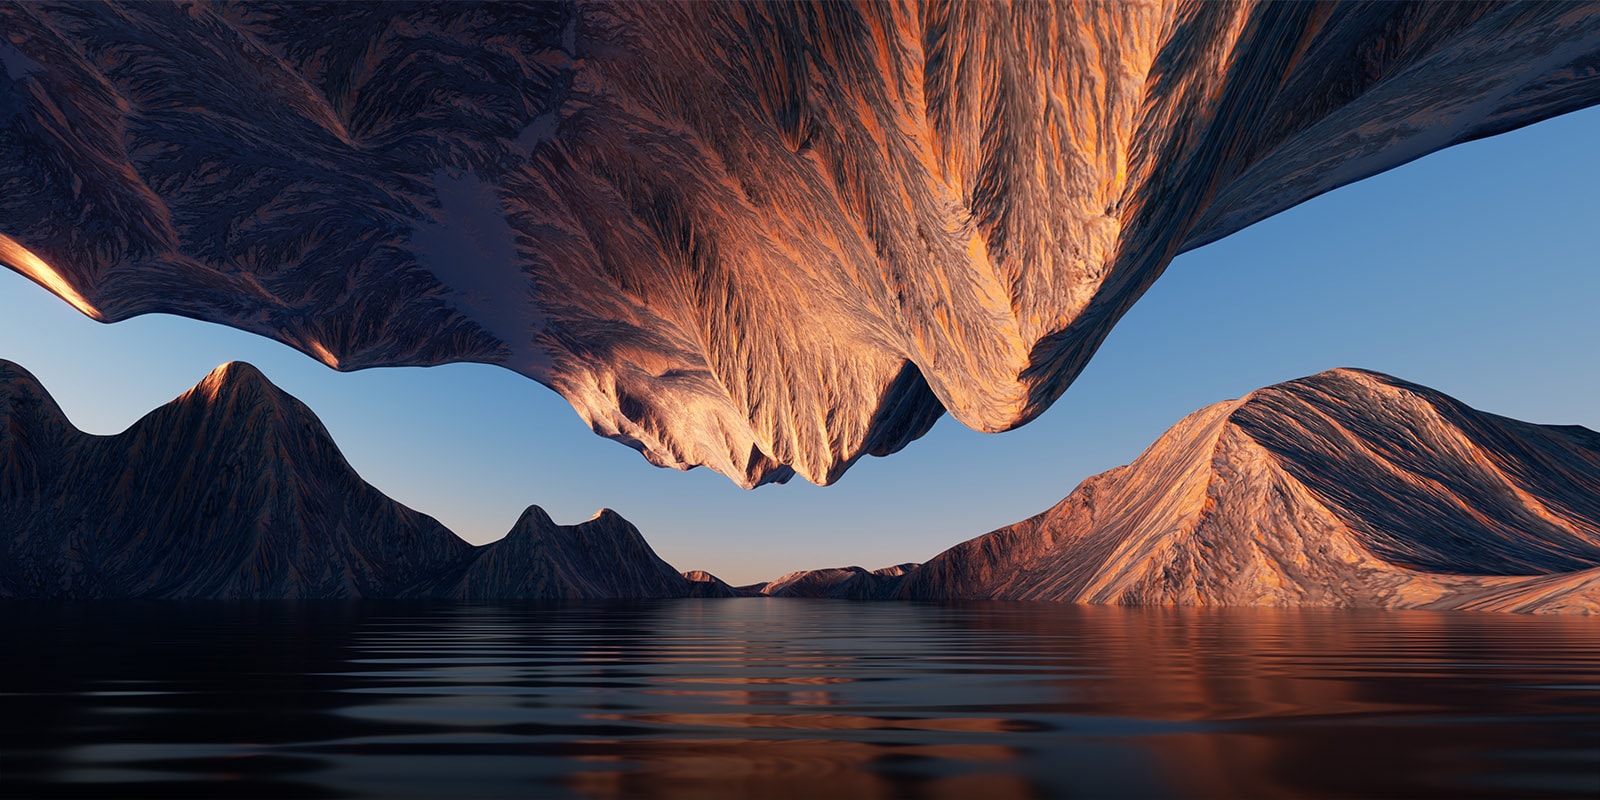 תמונת הטבע שבה מוצג הר סלעי מוצגת פעמיים כדי להשוות את הניגודיות והפירוט.